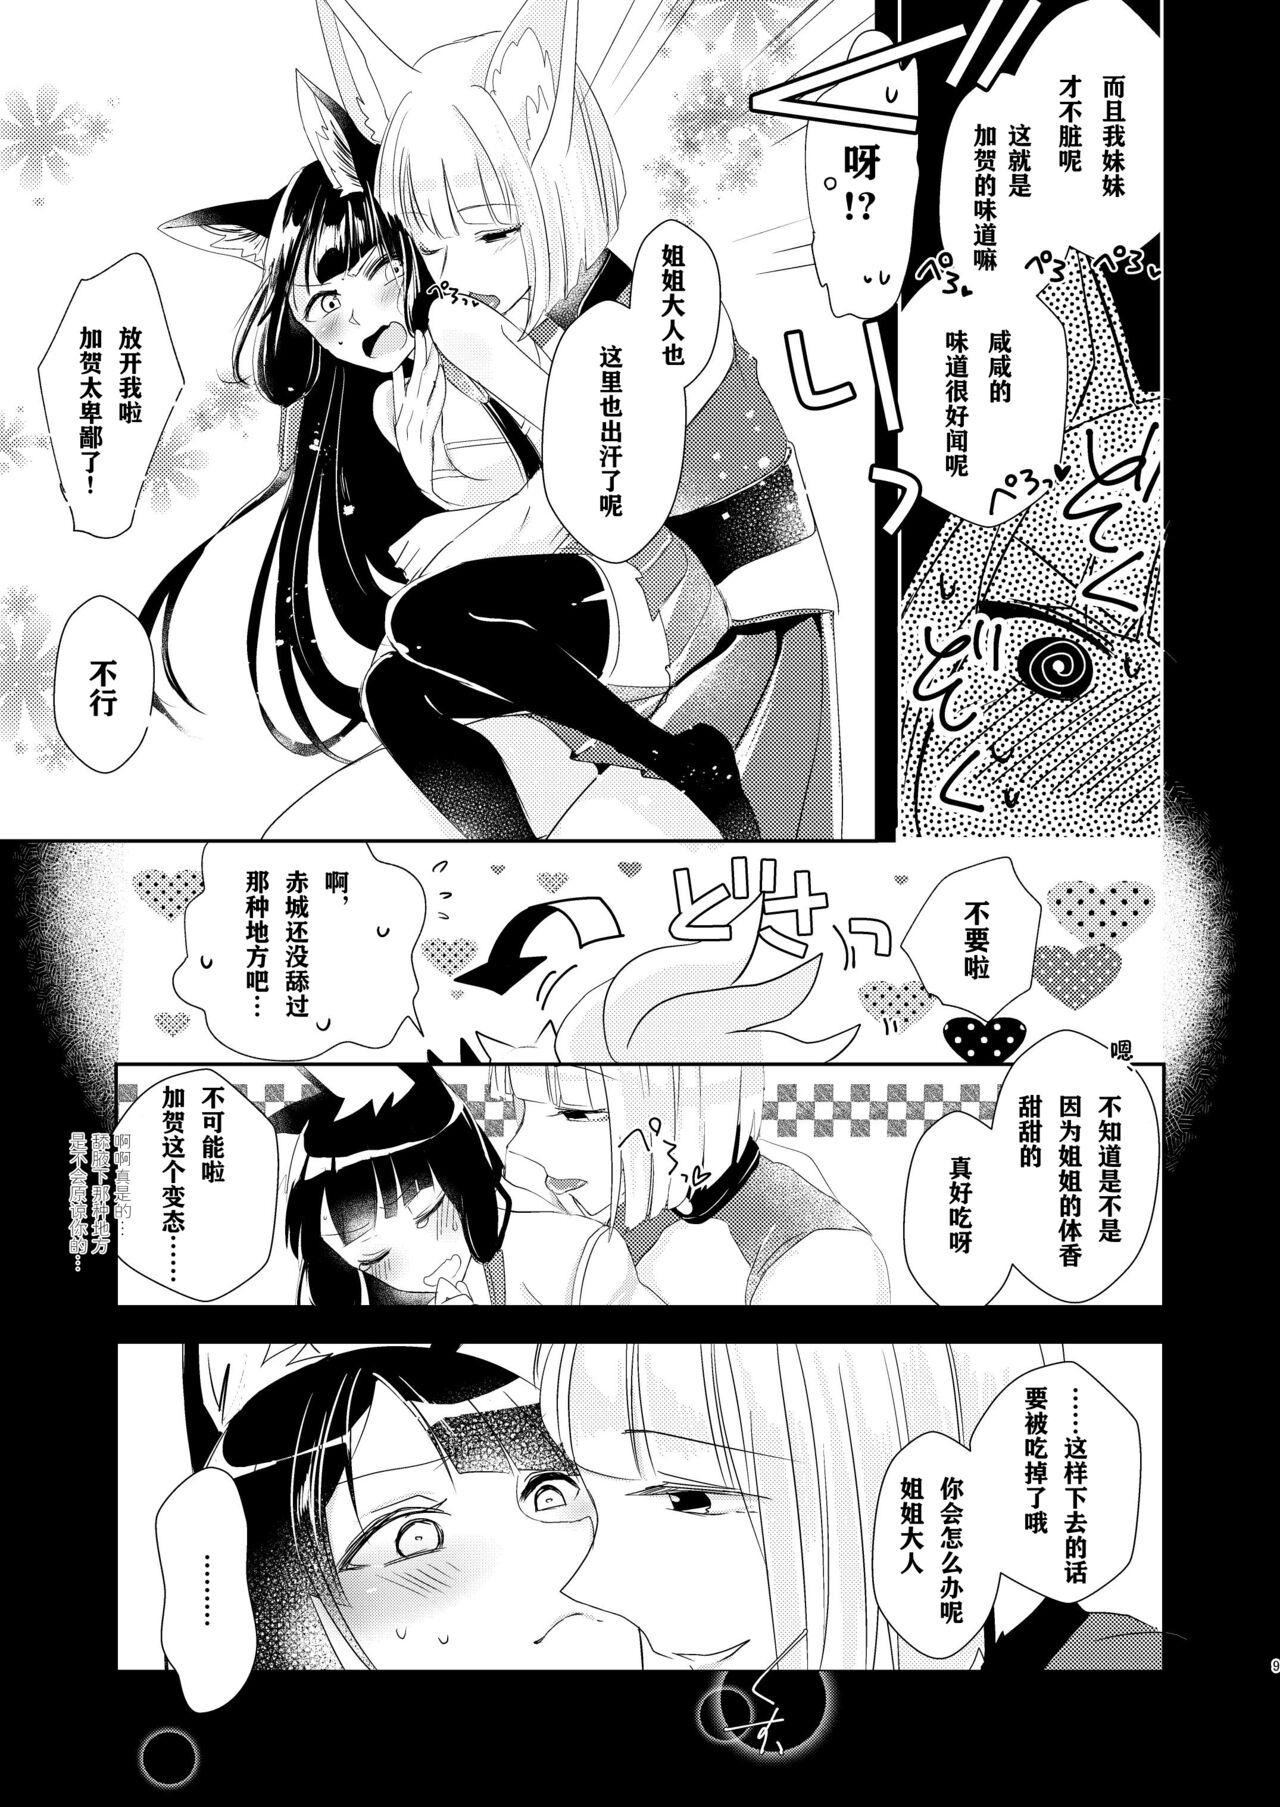 Amature Shitataru kara, Tabete Hoshii. - Azur lane Gayporn - Page 8